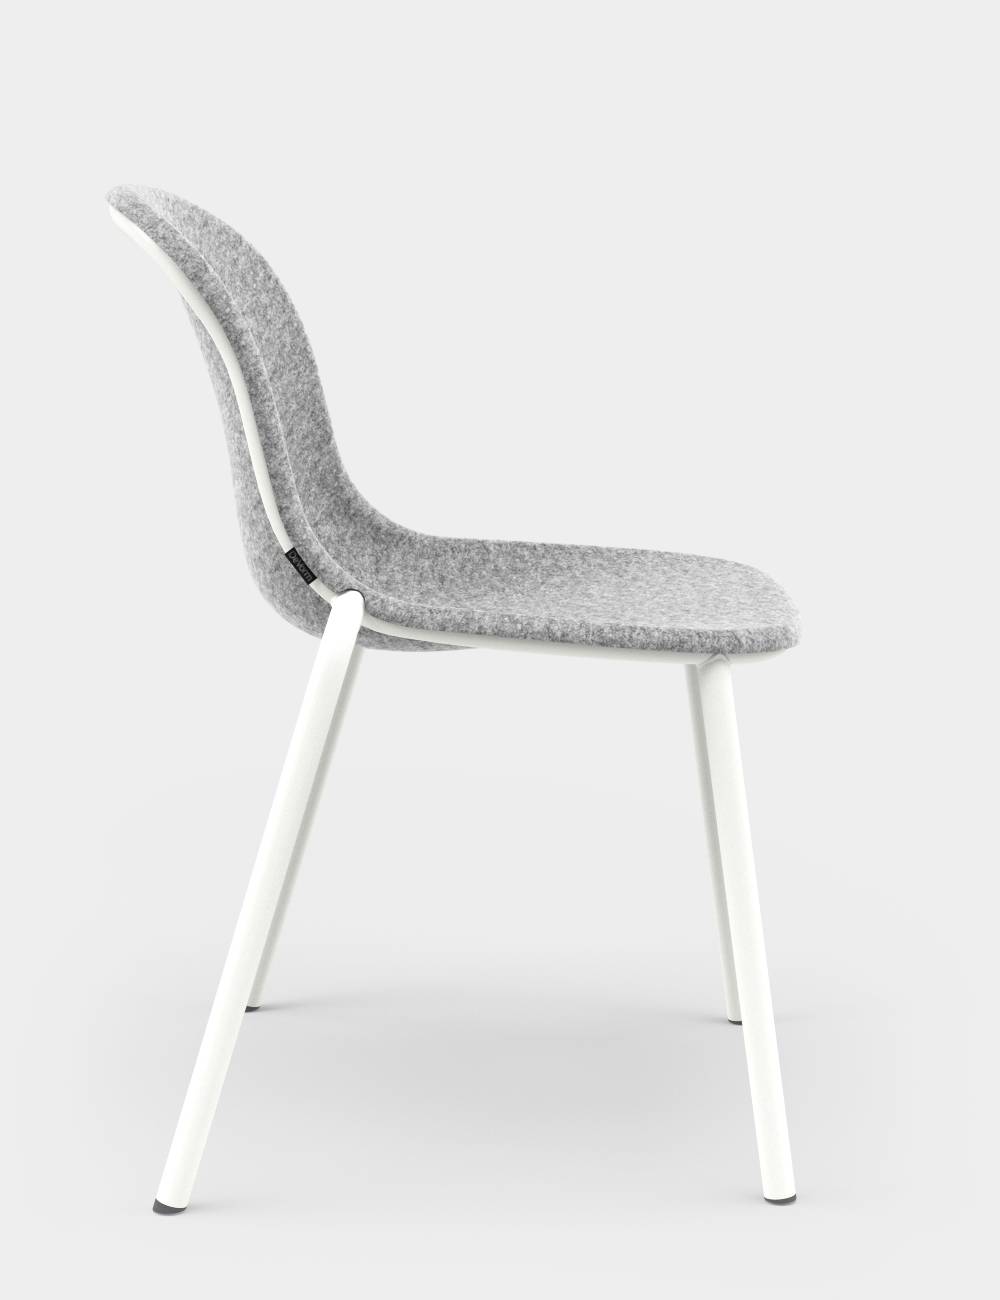 LJ 2 PET Felt Stack Chair Light Grey / White